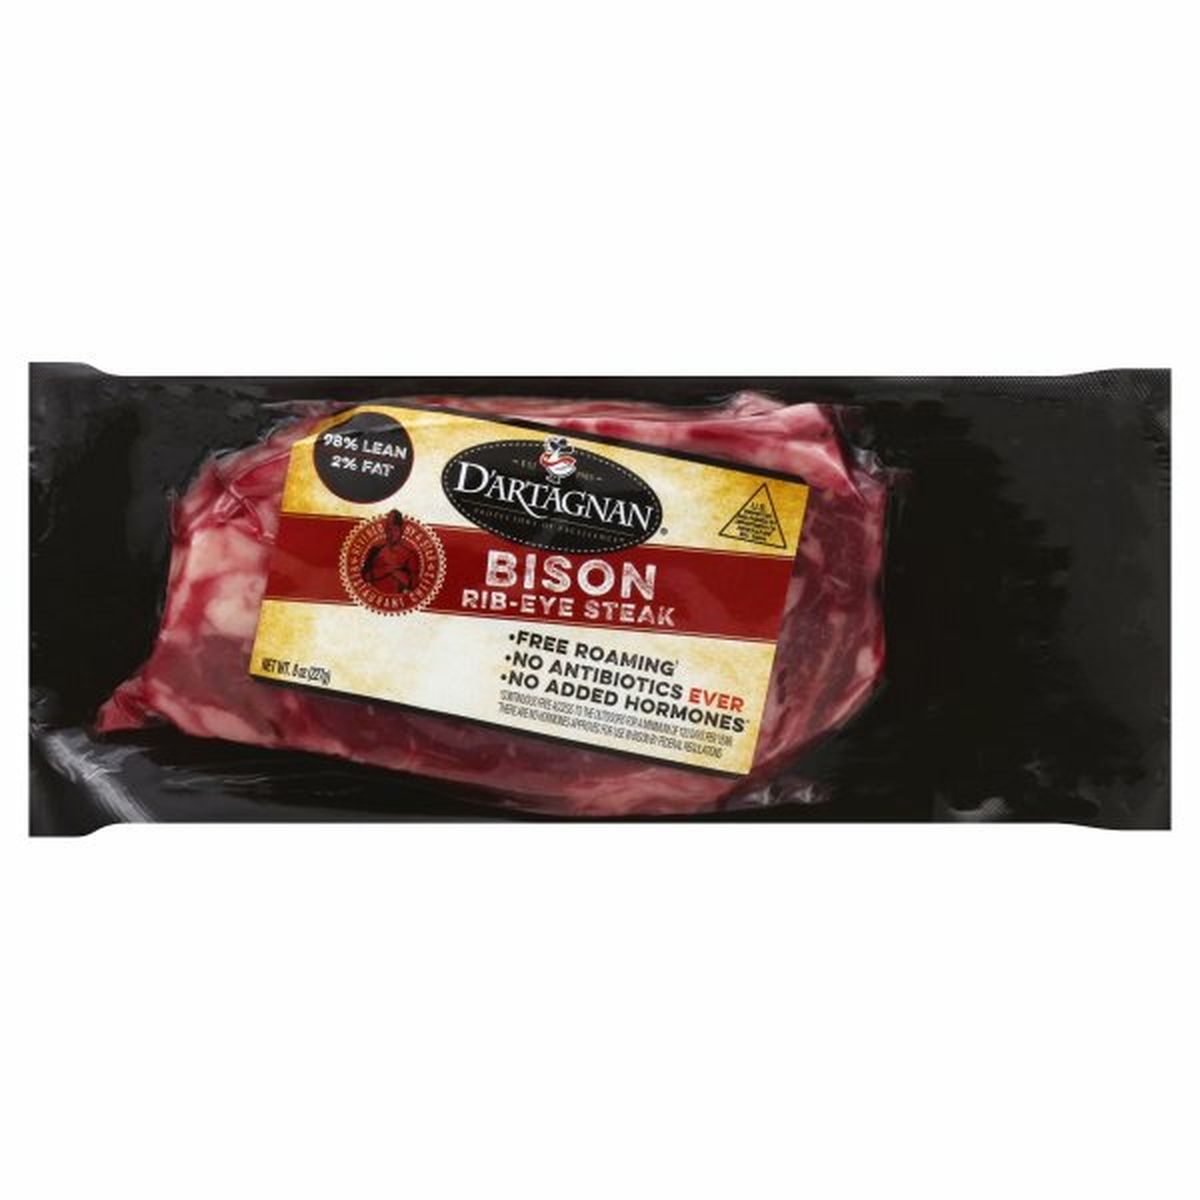 Calories in DArtagnan Bison, Rib-Eye Steak